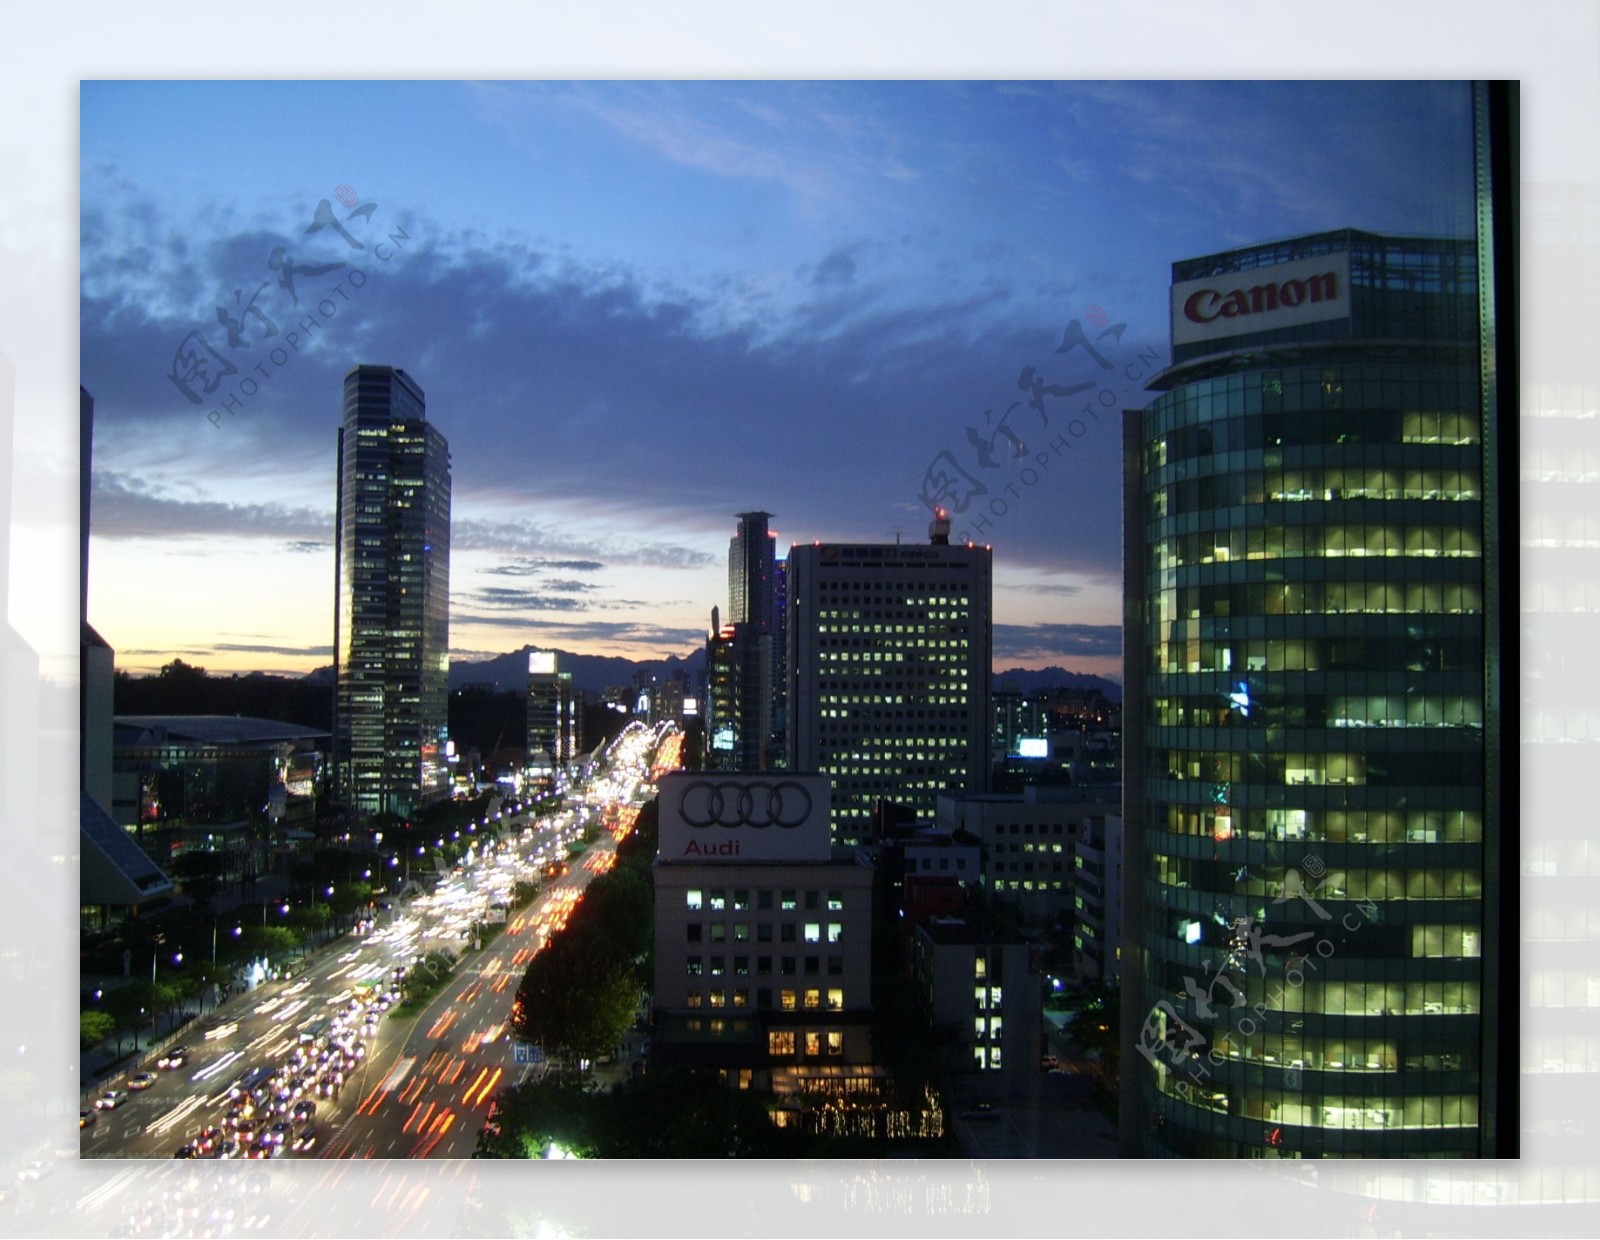 韩国首尔城市街道街景夜景图片